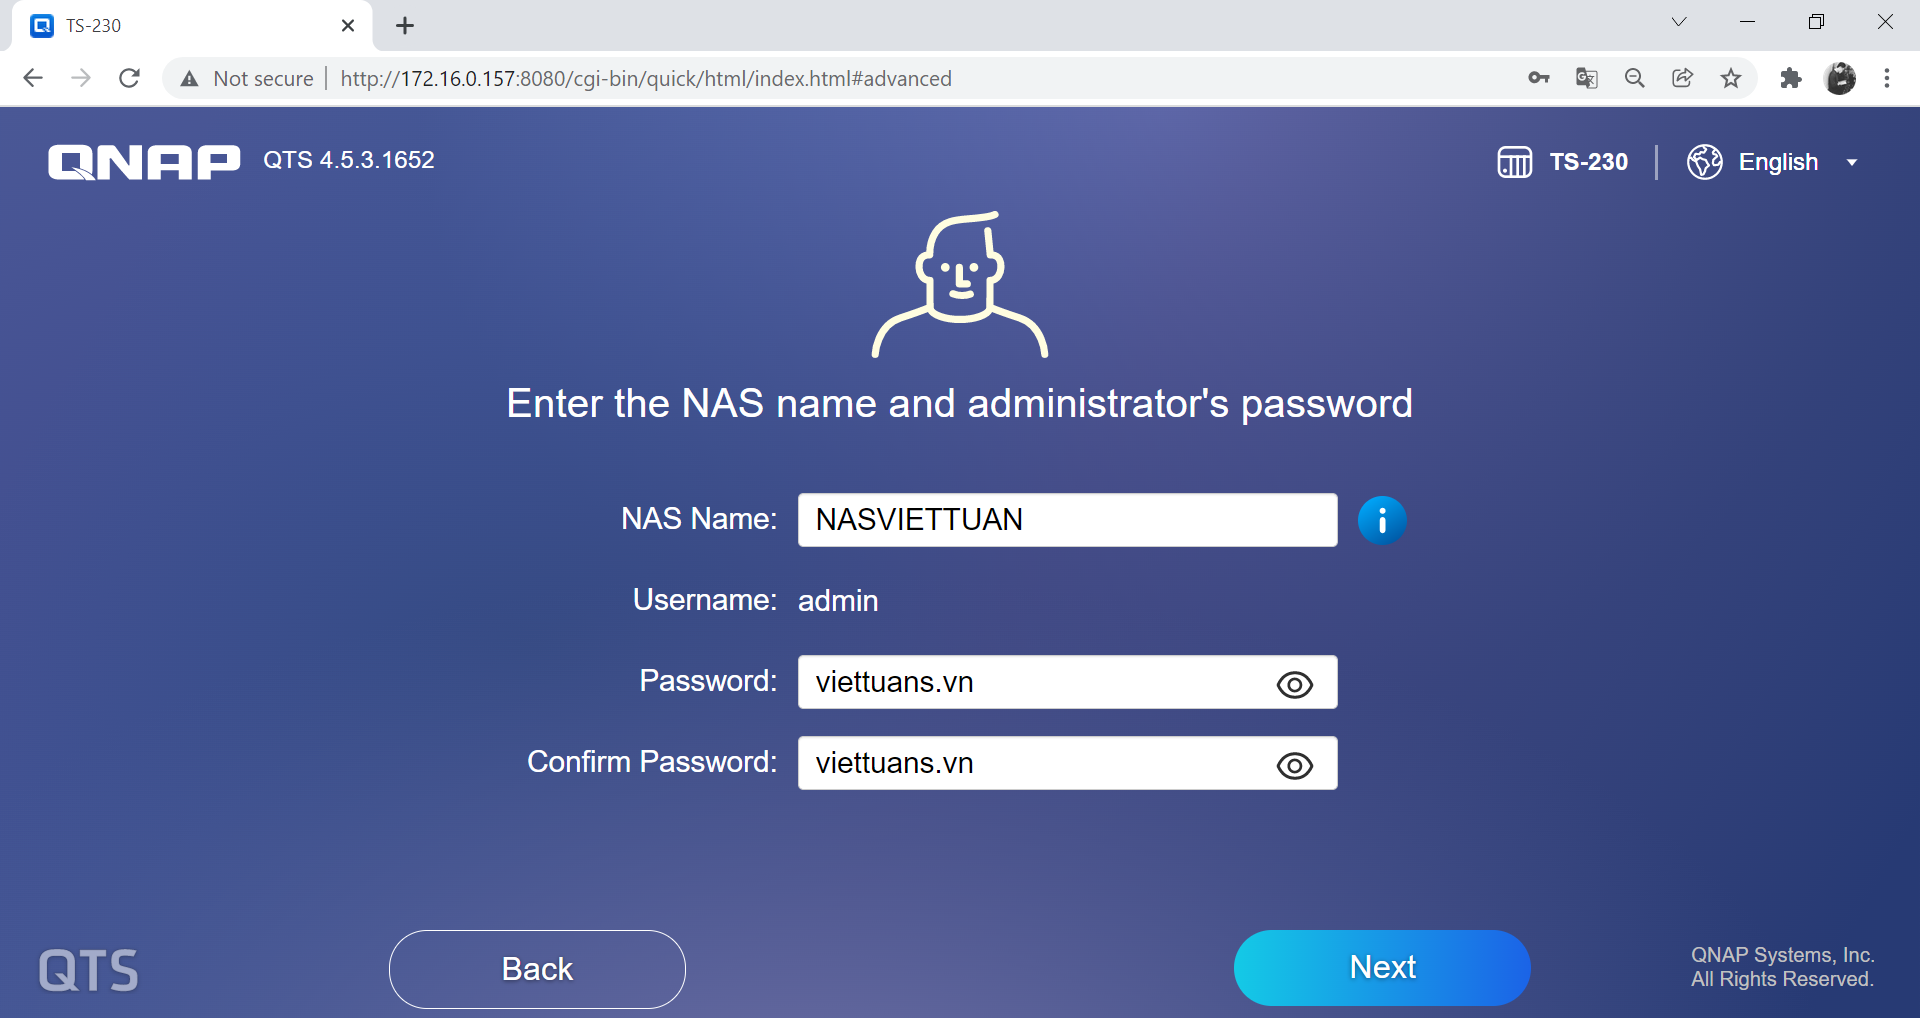 Tiến hành đặt tên cho thiết bị Qnap, đặt password cho người quản trị (administrator).